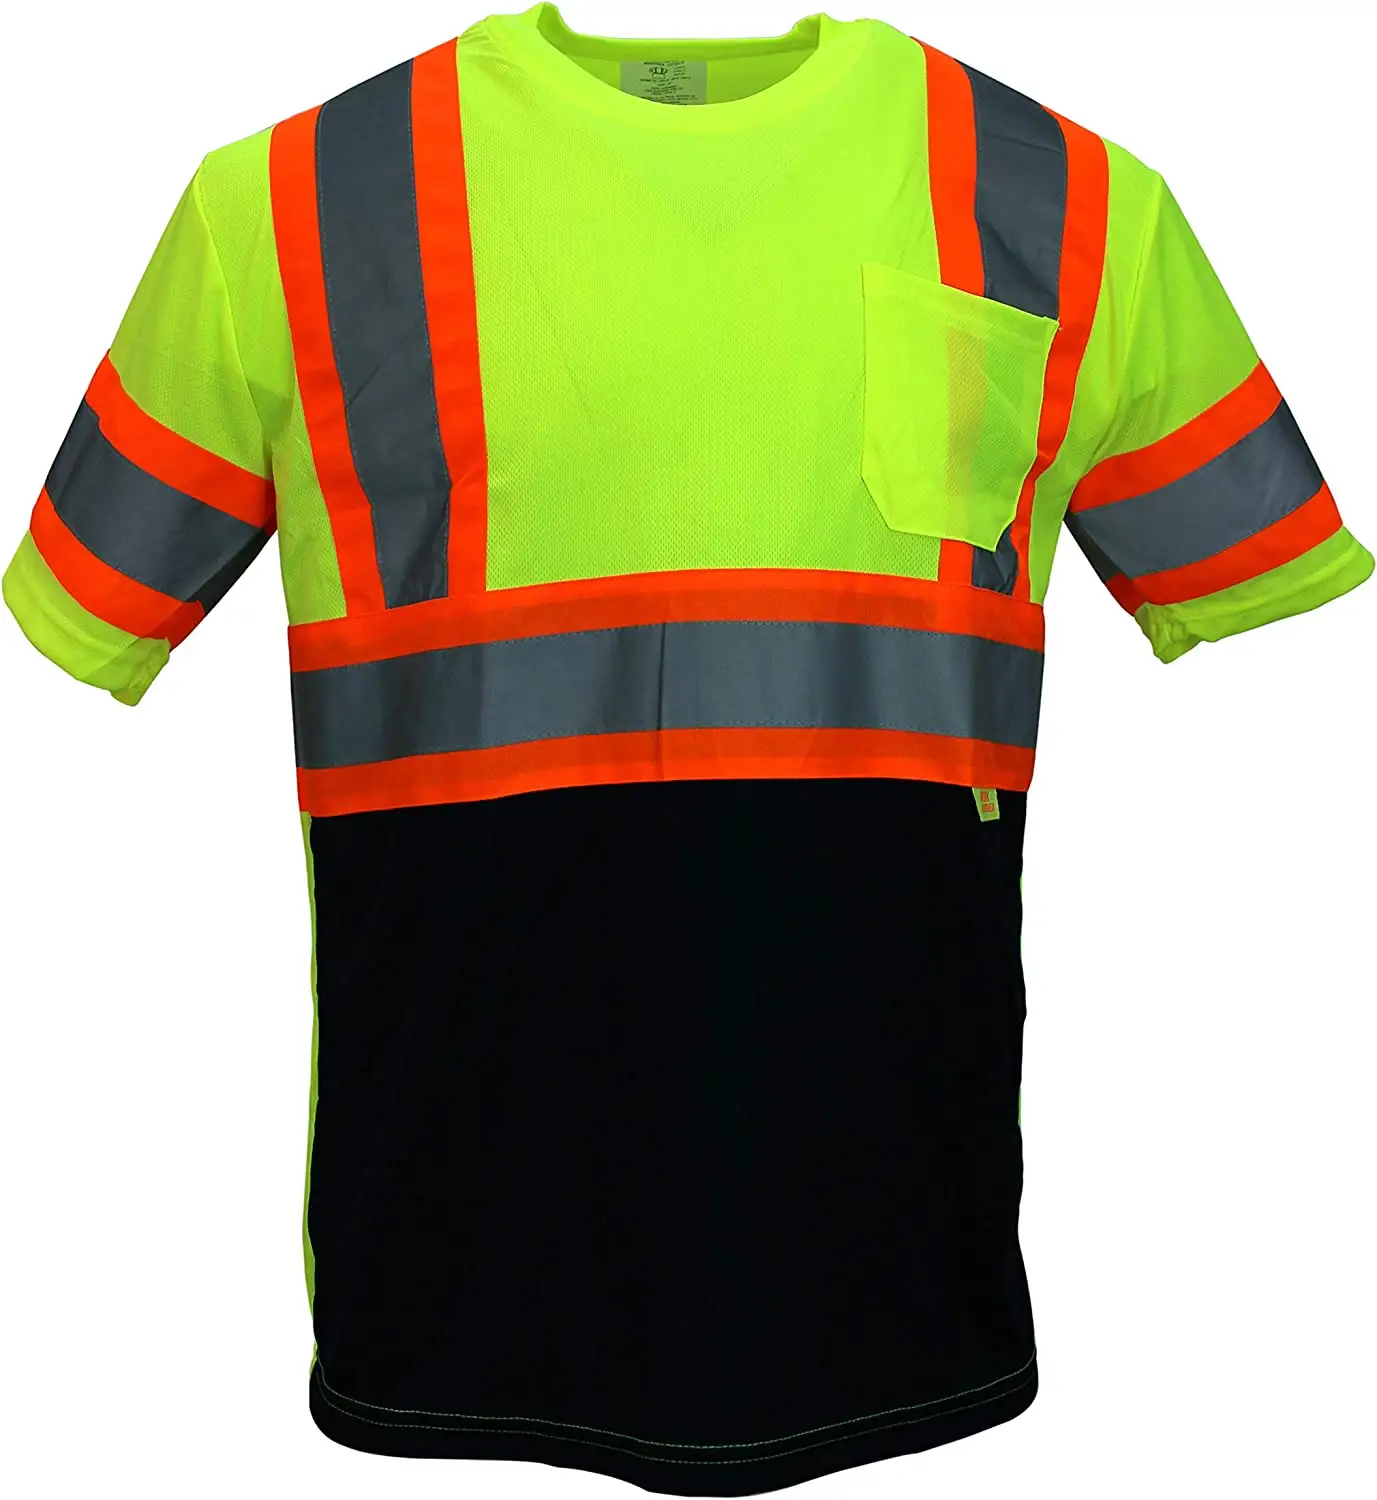 Mechaniker hemd Männer Unisex reflektierende Arbeits kleidung Hi Vis Work Safety T-Shirt für Männer Overs ize Stricken Hi Viz T-Shirt